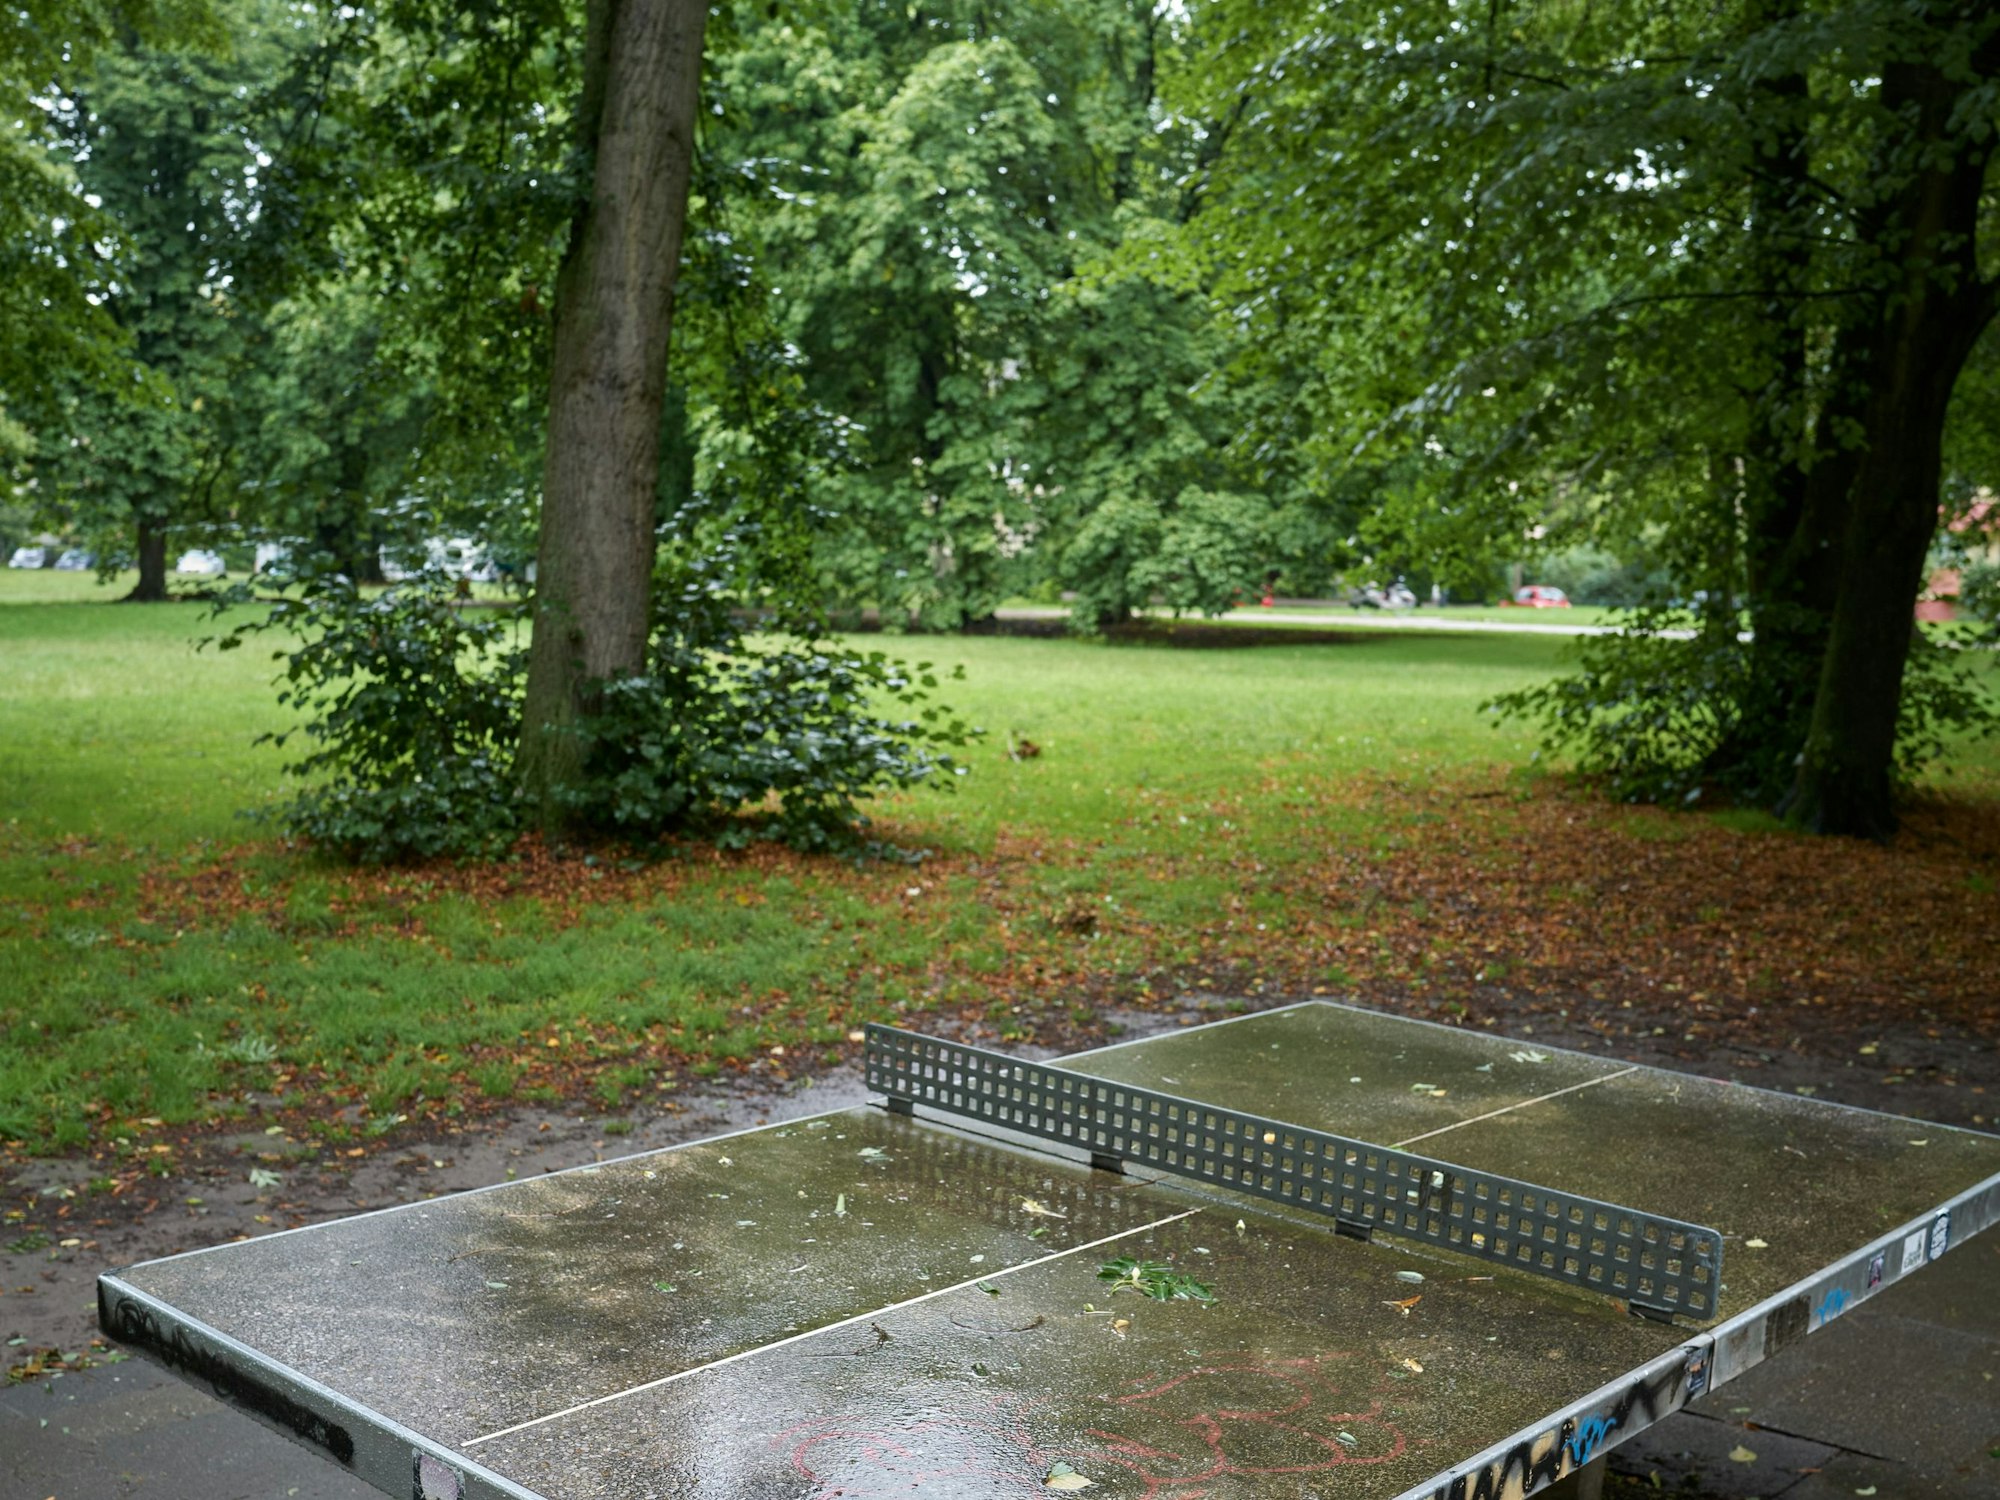 Eine Tischtennisplatte steht auf einer asphaltierten Fläche in einem Park.